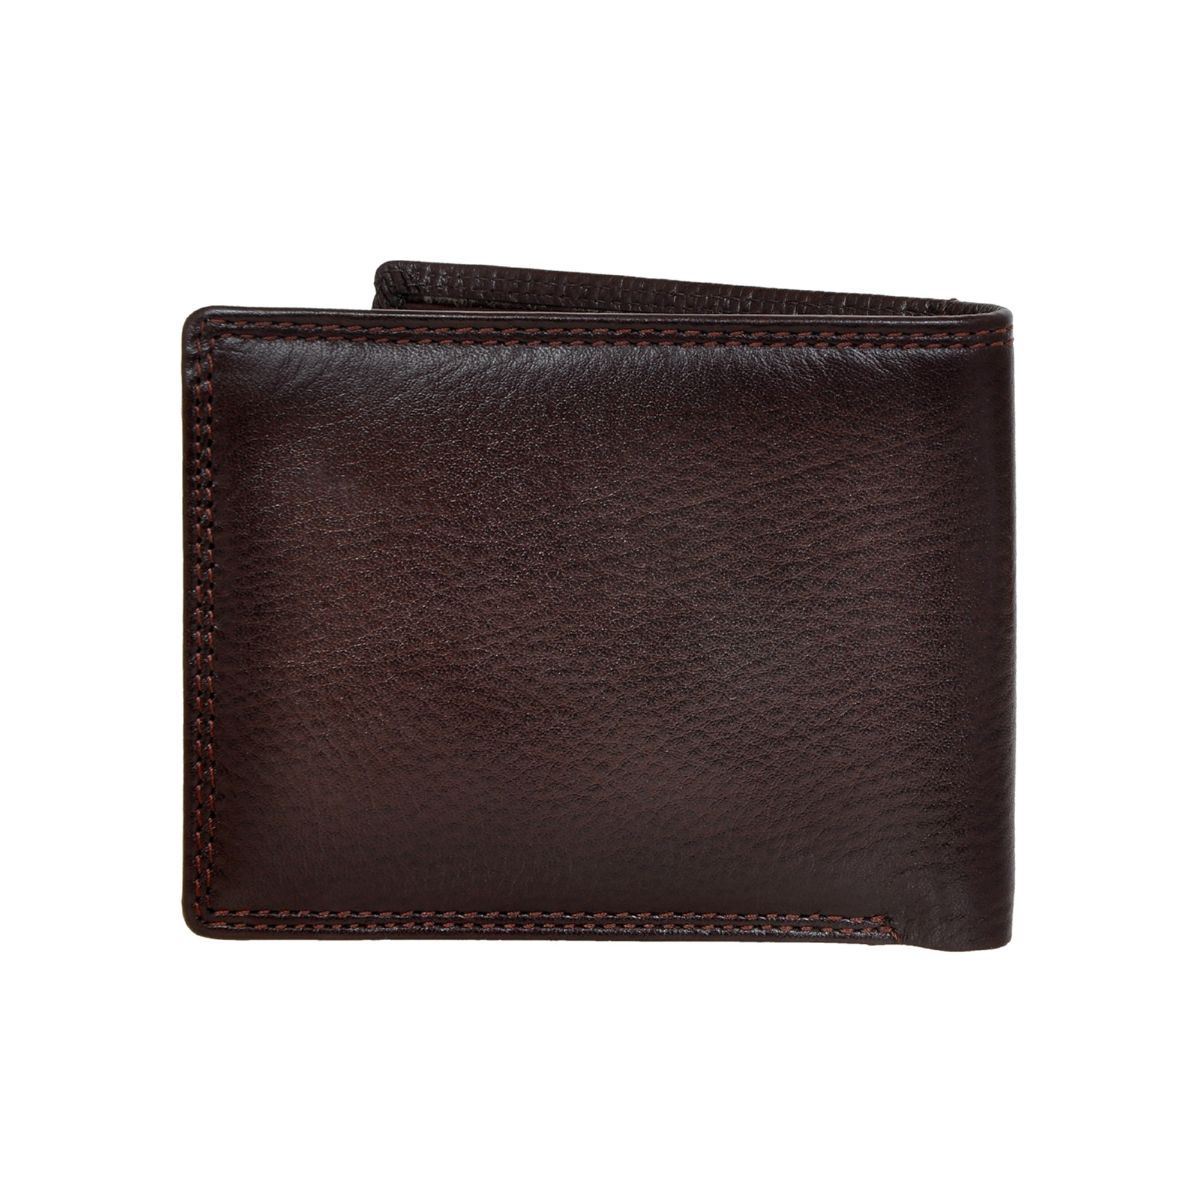 Allen Cooper Brown Leather Wallets For Men: Buy Allen Cooper Brown ...